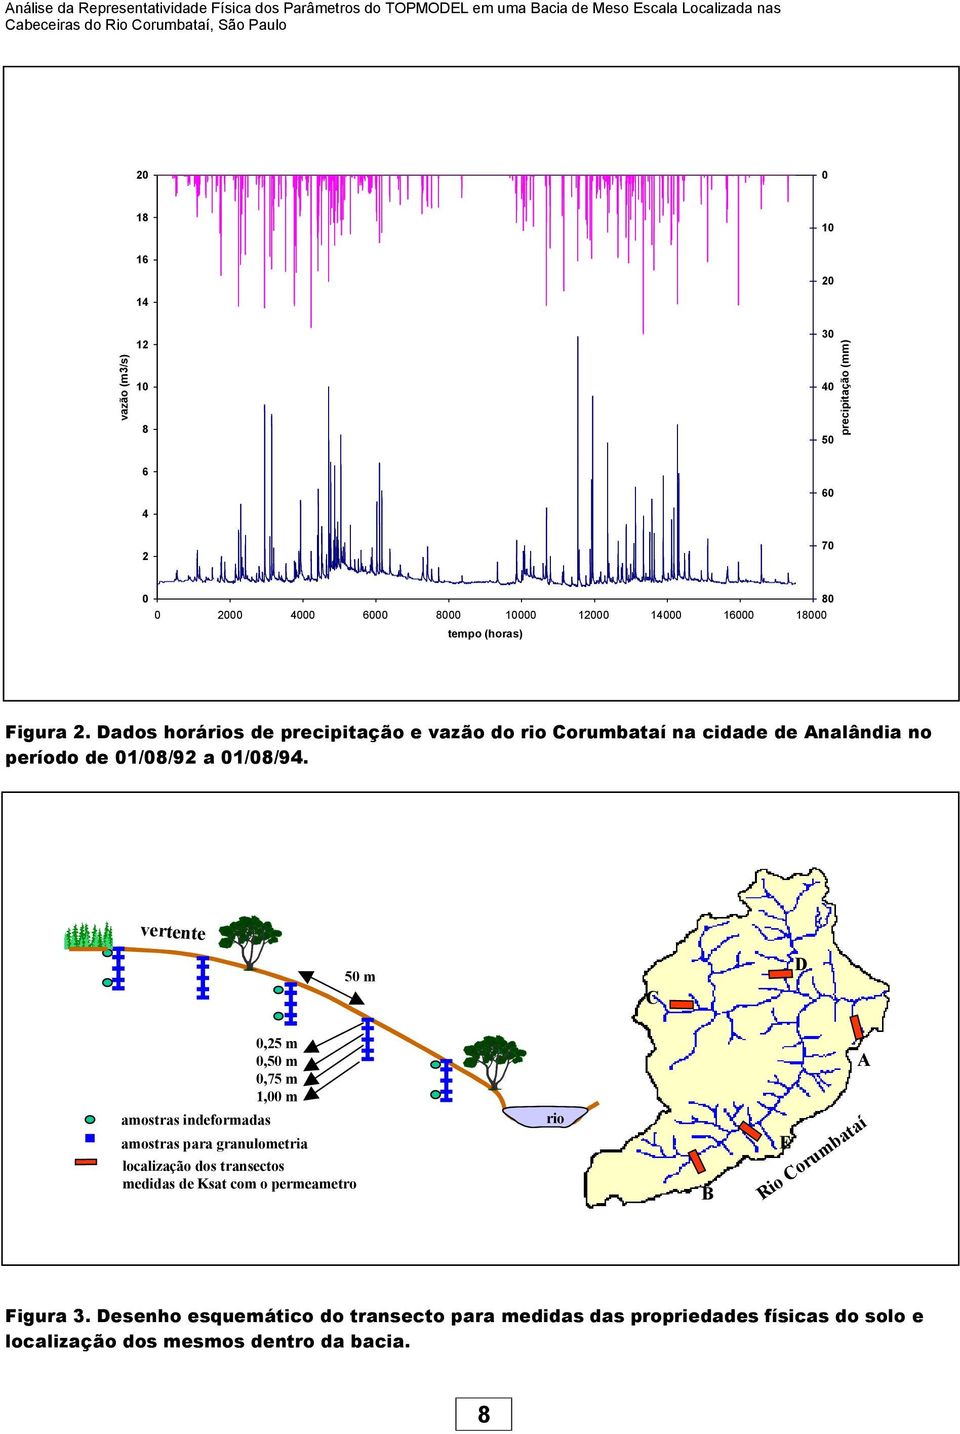 Dados horários de precipitação e vazão do rio Corumbataí na cidade de Analândia no período de 1/8/92 a 1/8/94.